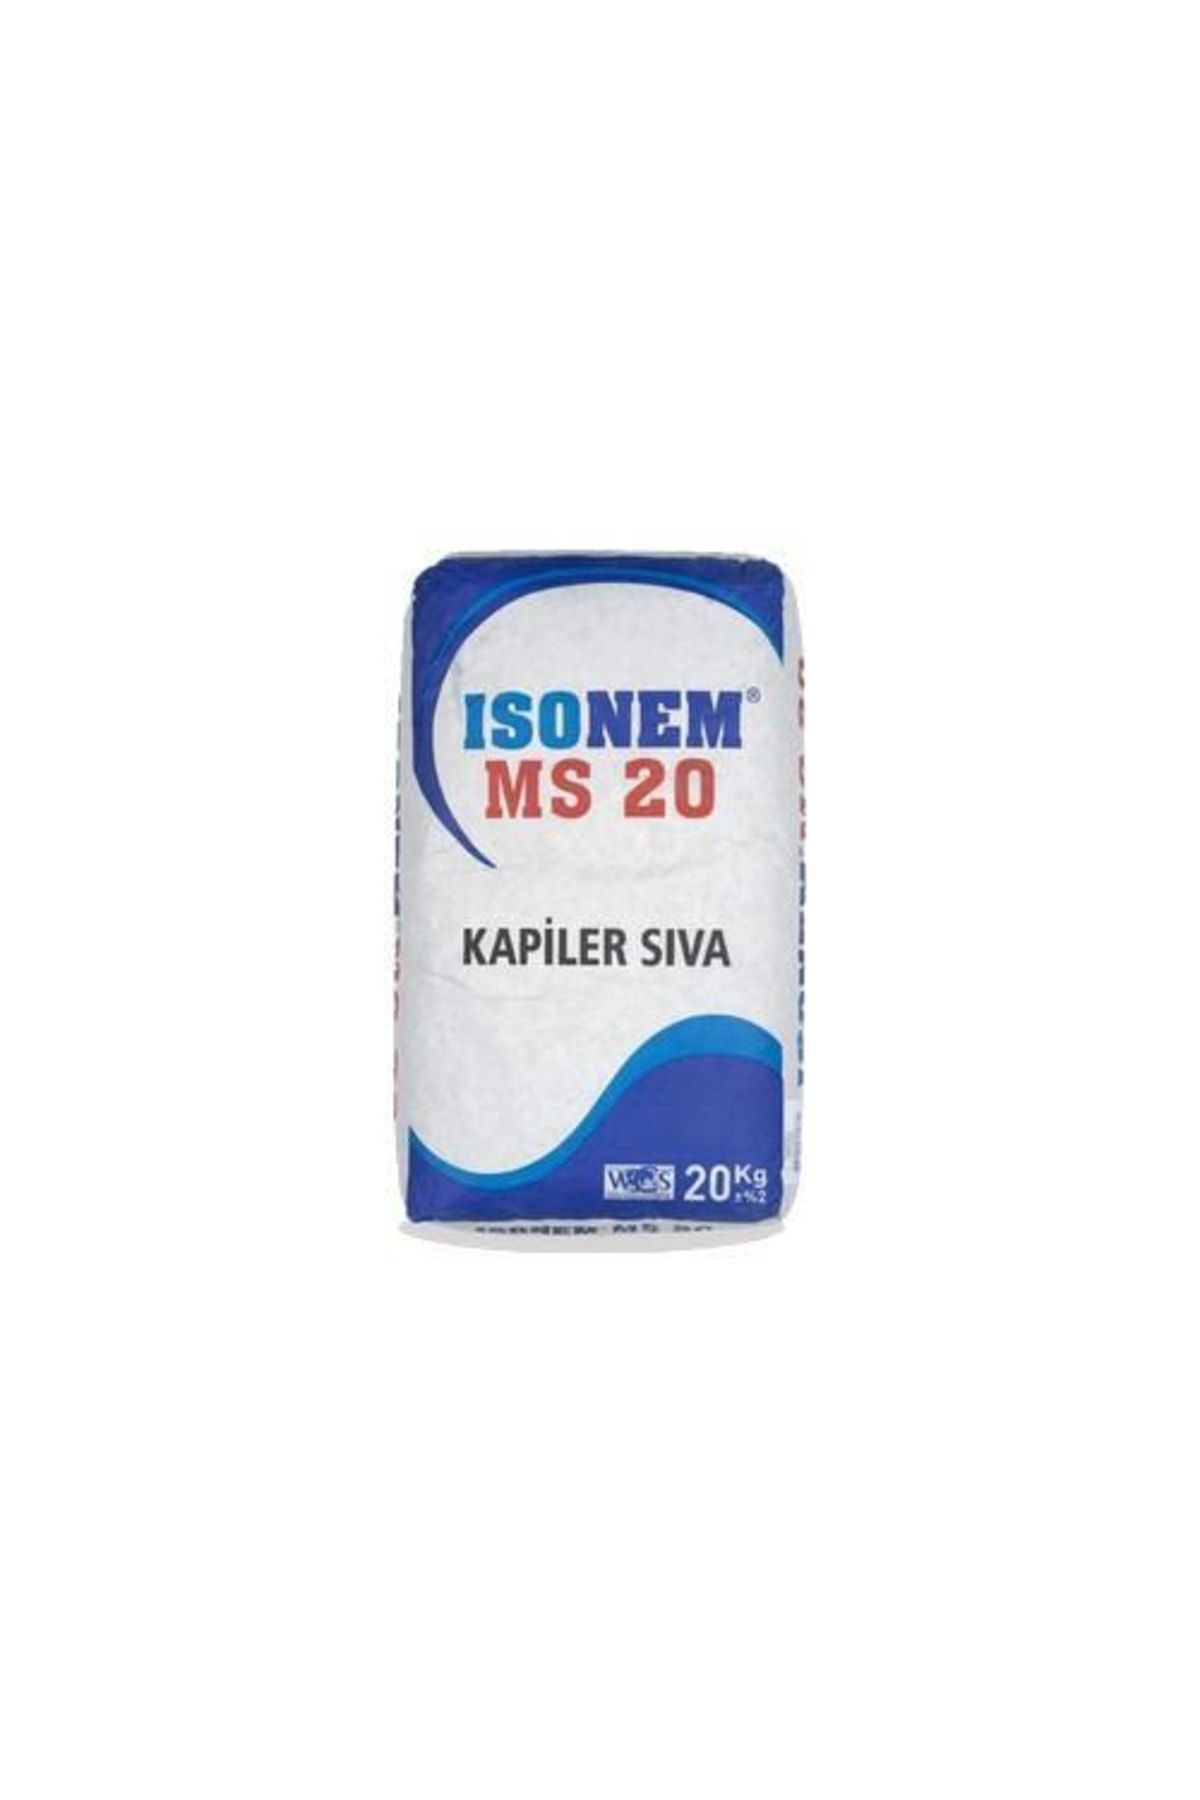 Isonem Ms20 Kapiler Sıva 20 Kg